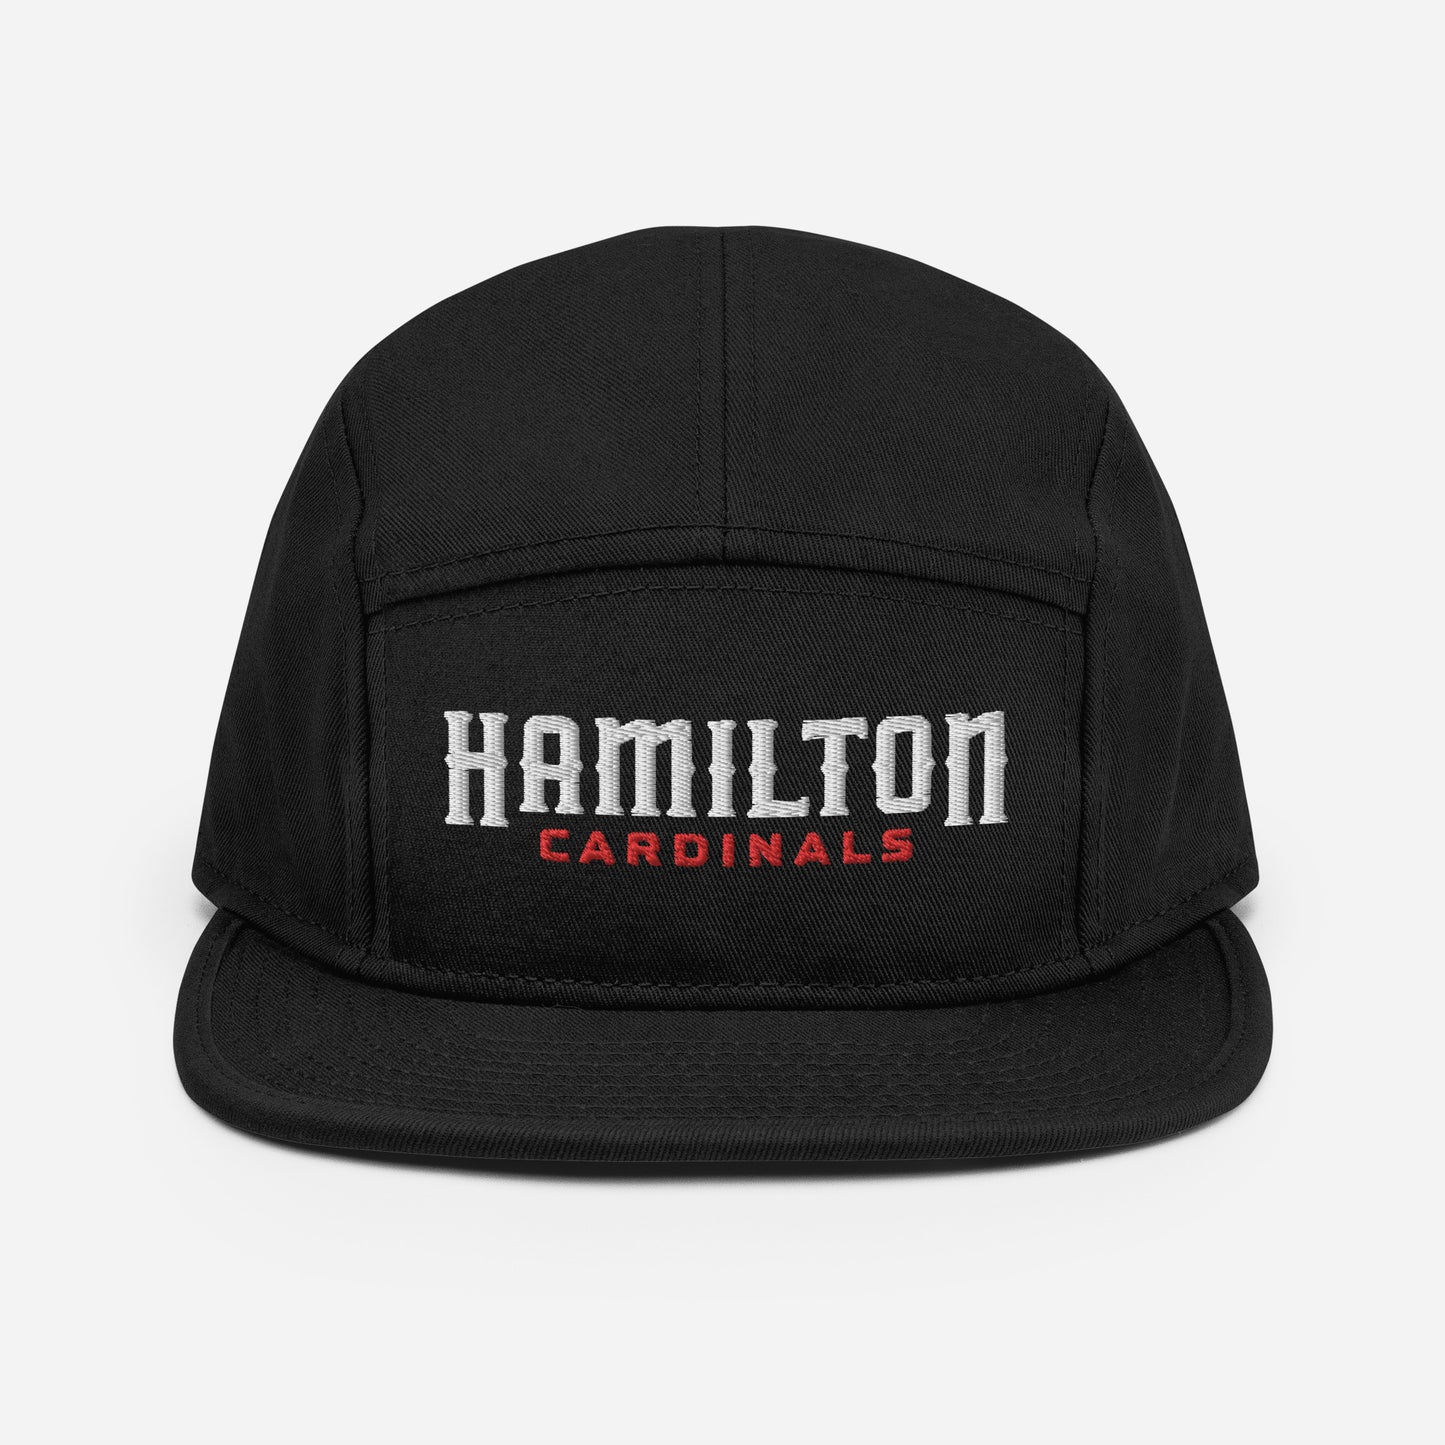 Hamilton Cardinals Text 5 Panel Camper Hat